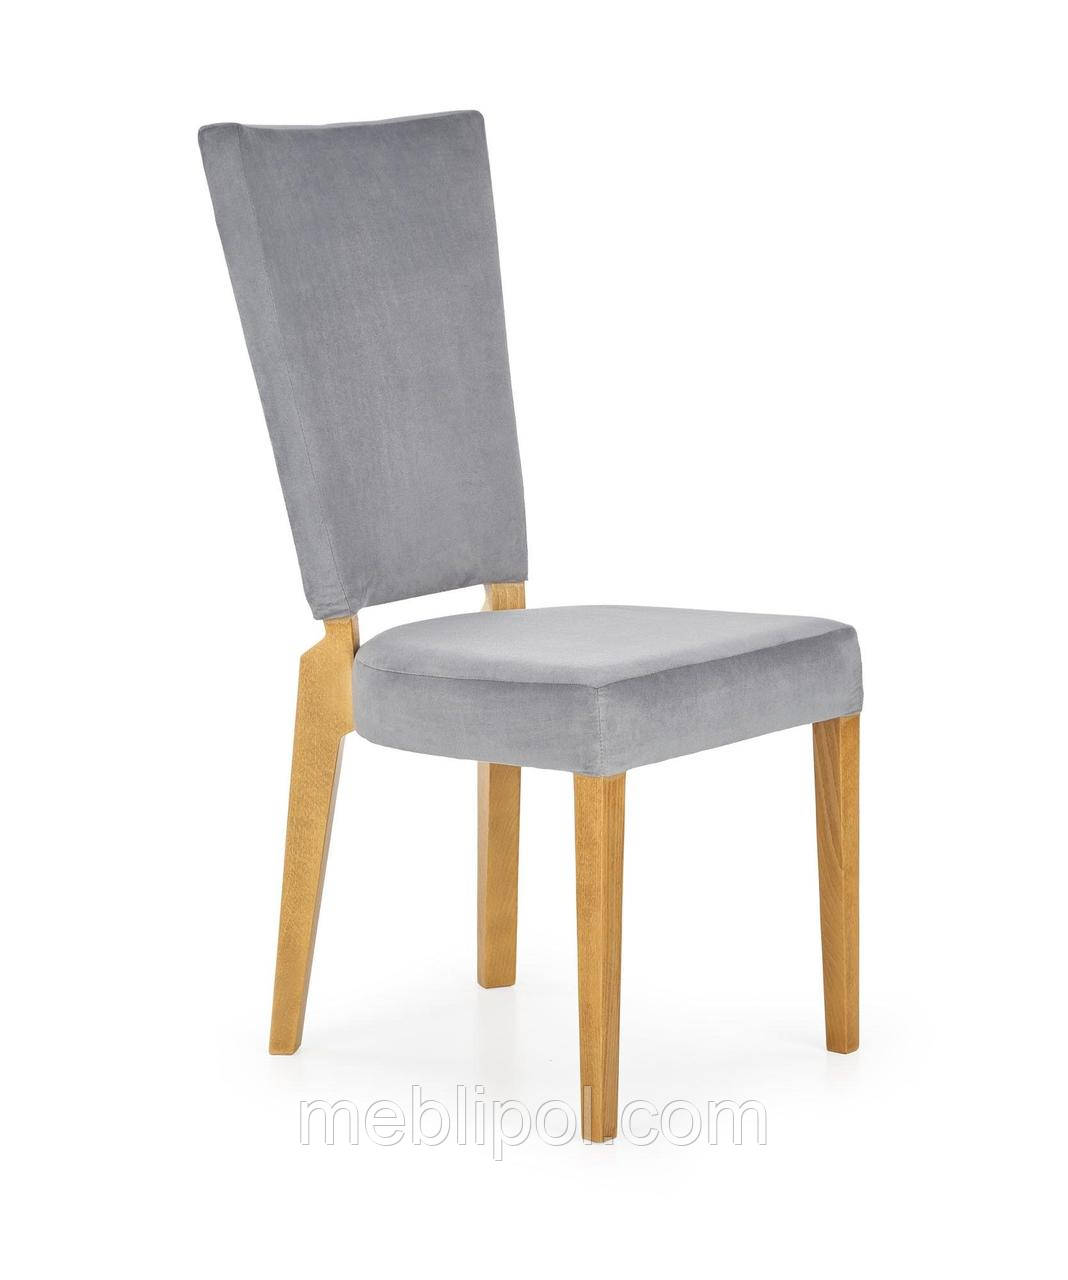 Крісло дерев'яне ROIS